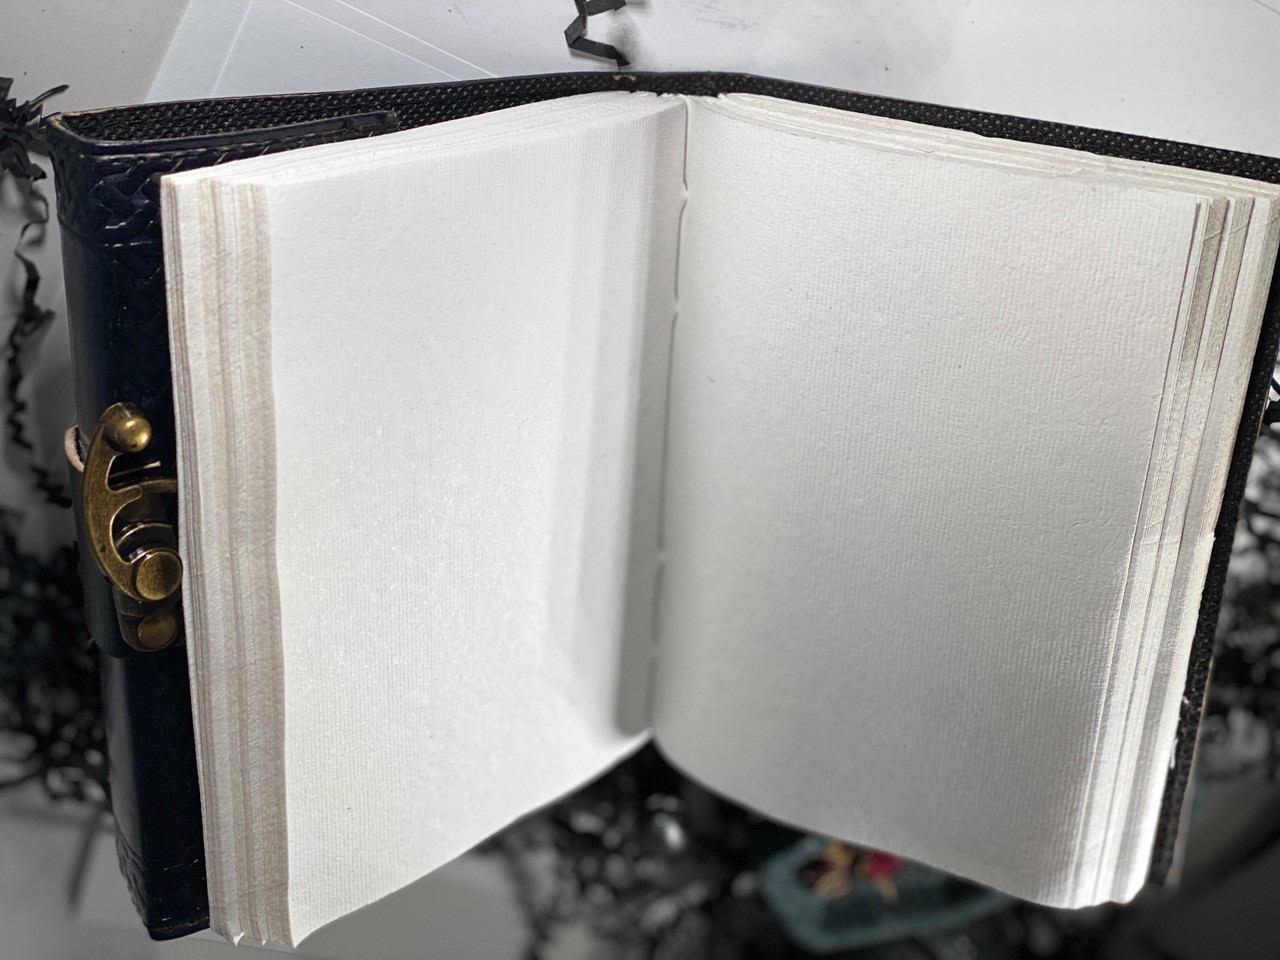 Leather-bound Camarilla Journal / Sketchbook